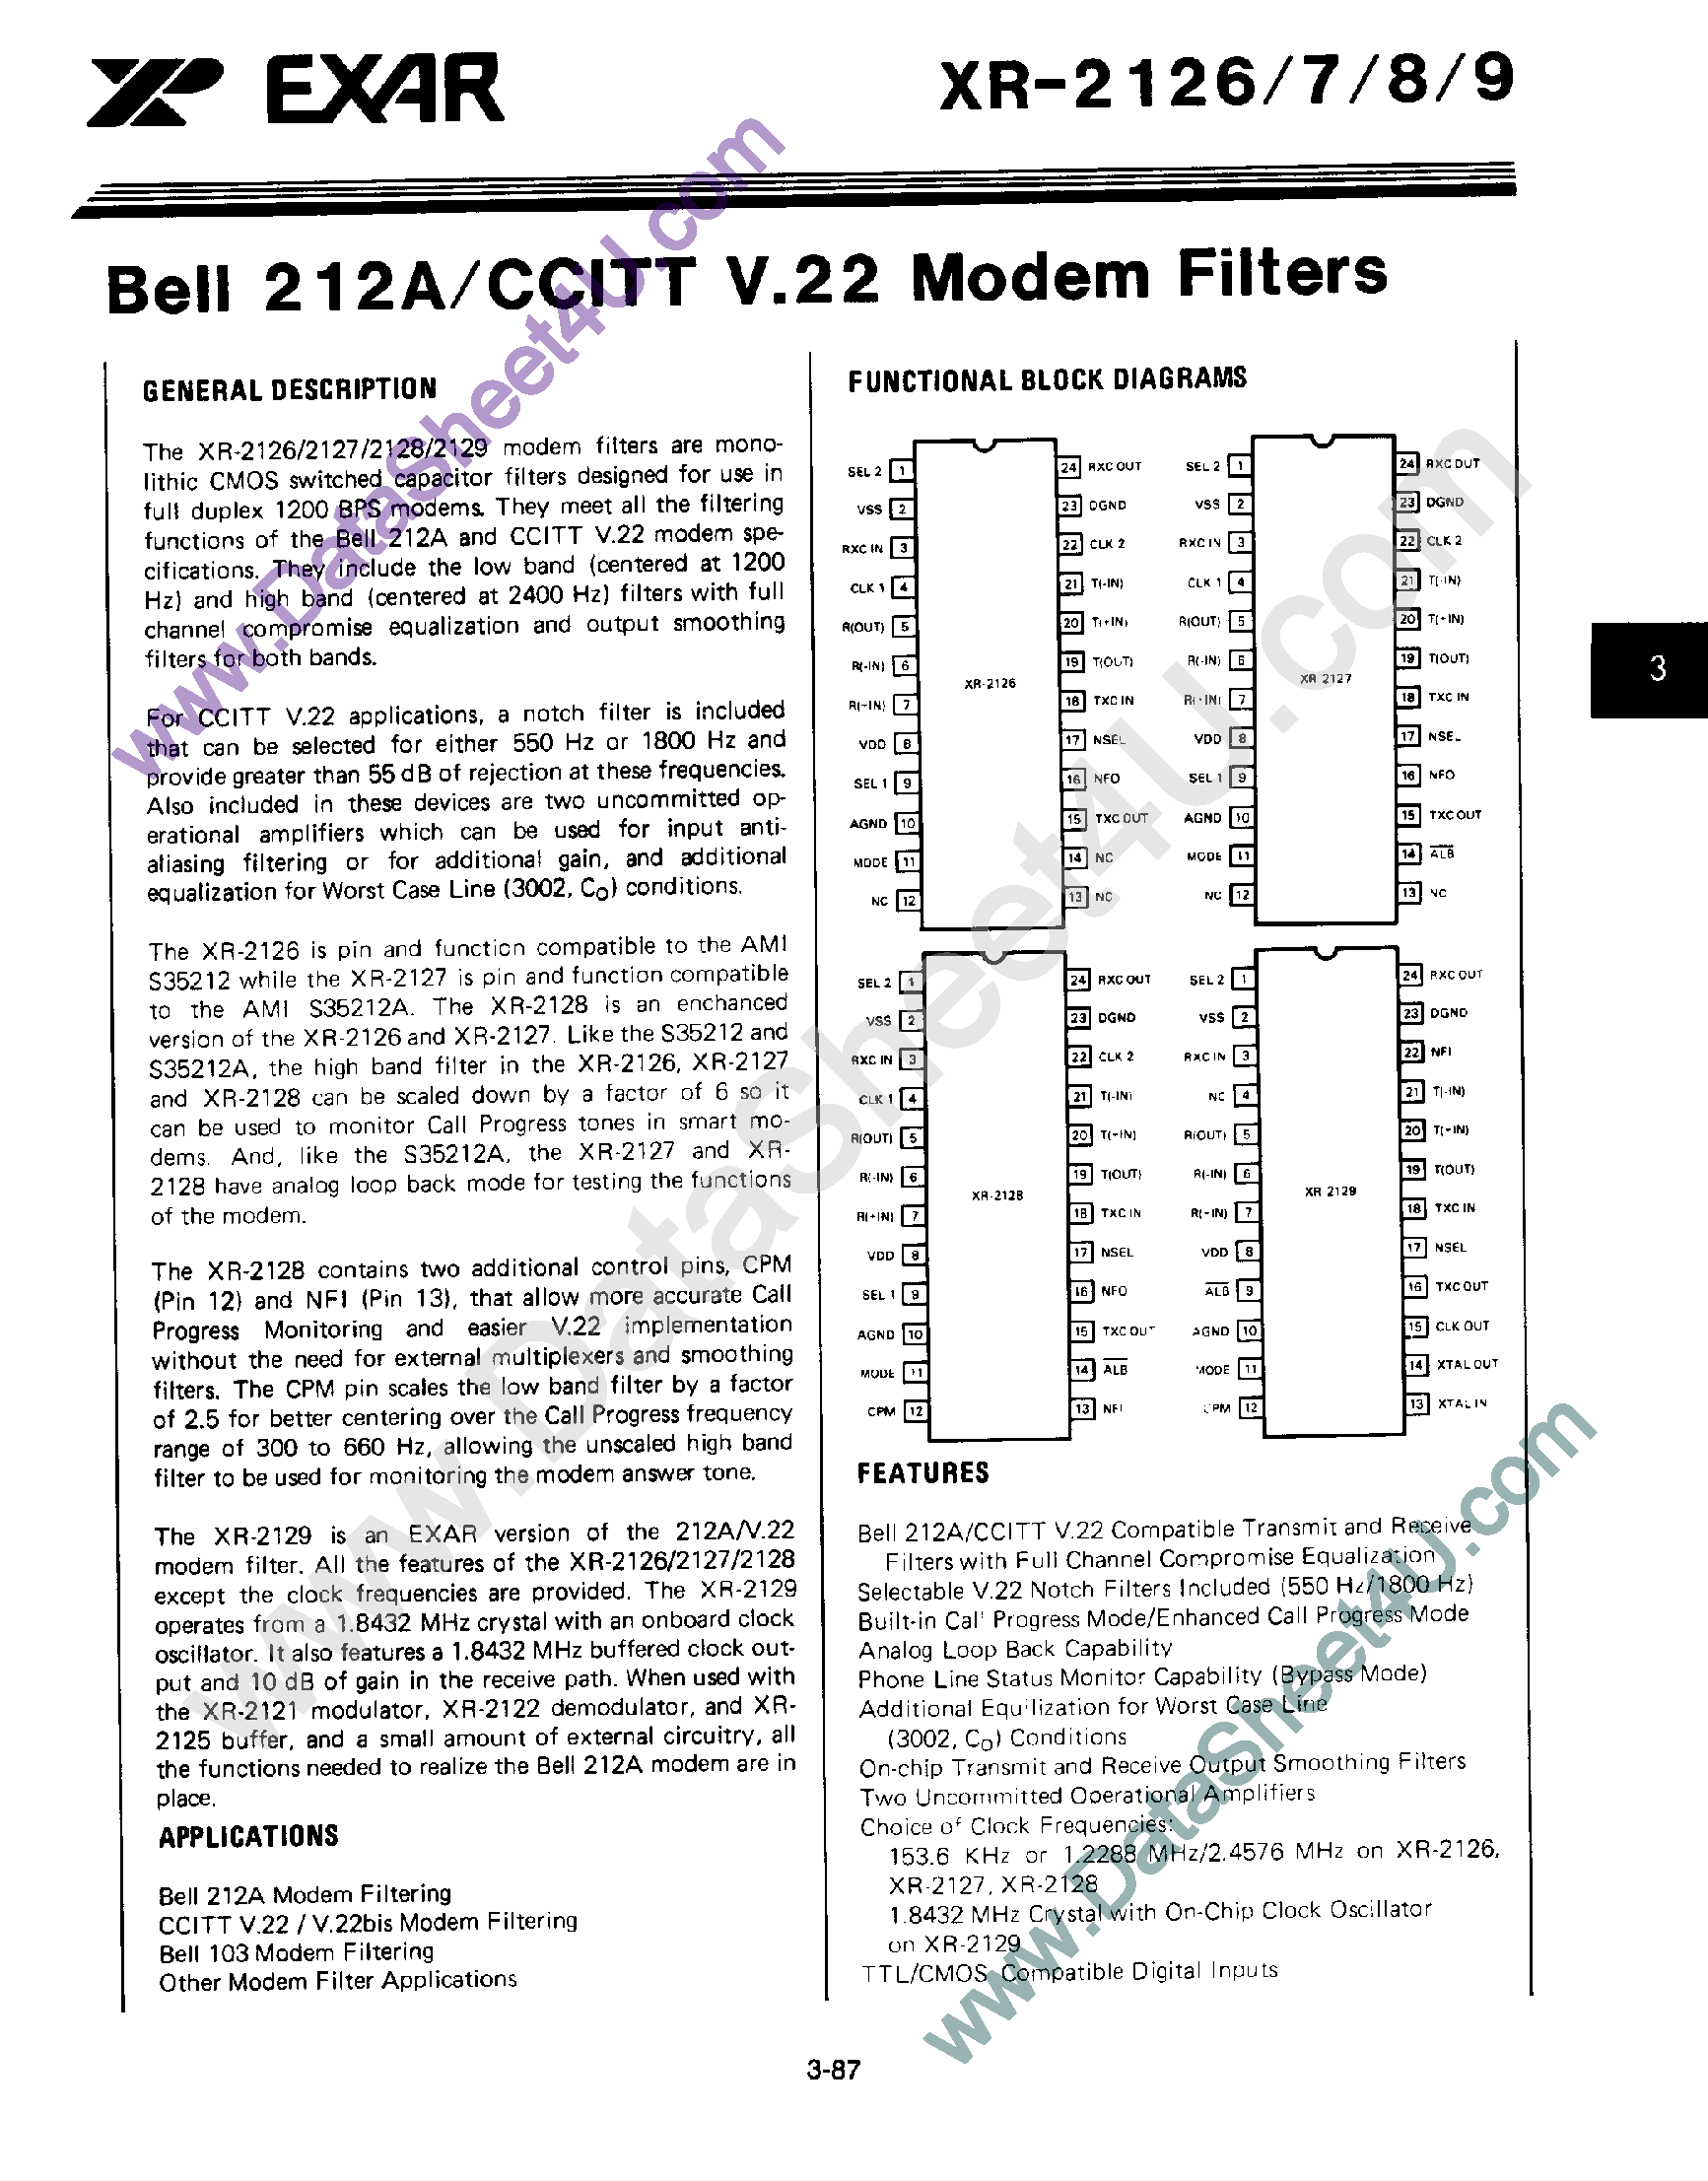 Datasheet XR-2127 - Bell 212A / CCITT V.22 Modem Filters page 1